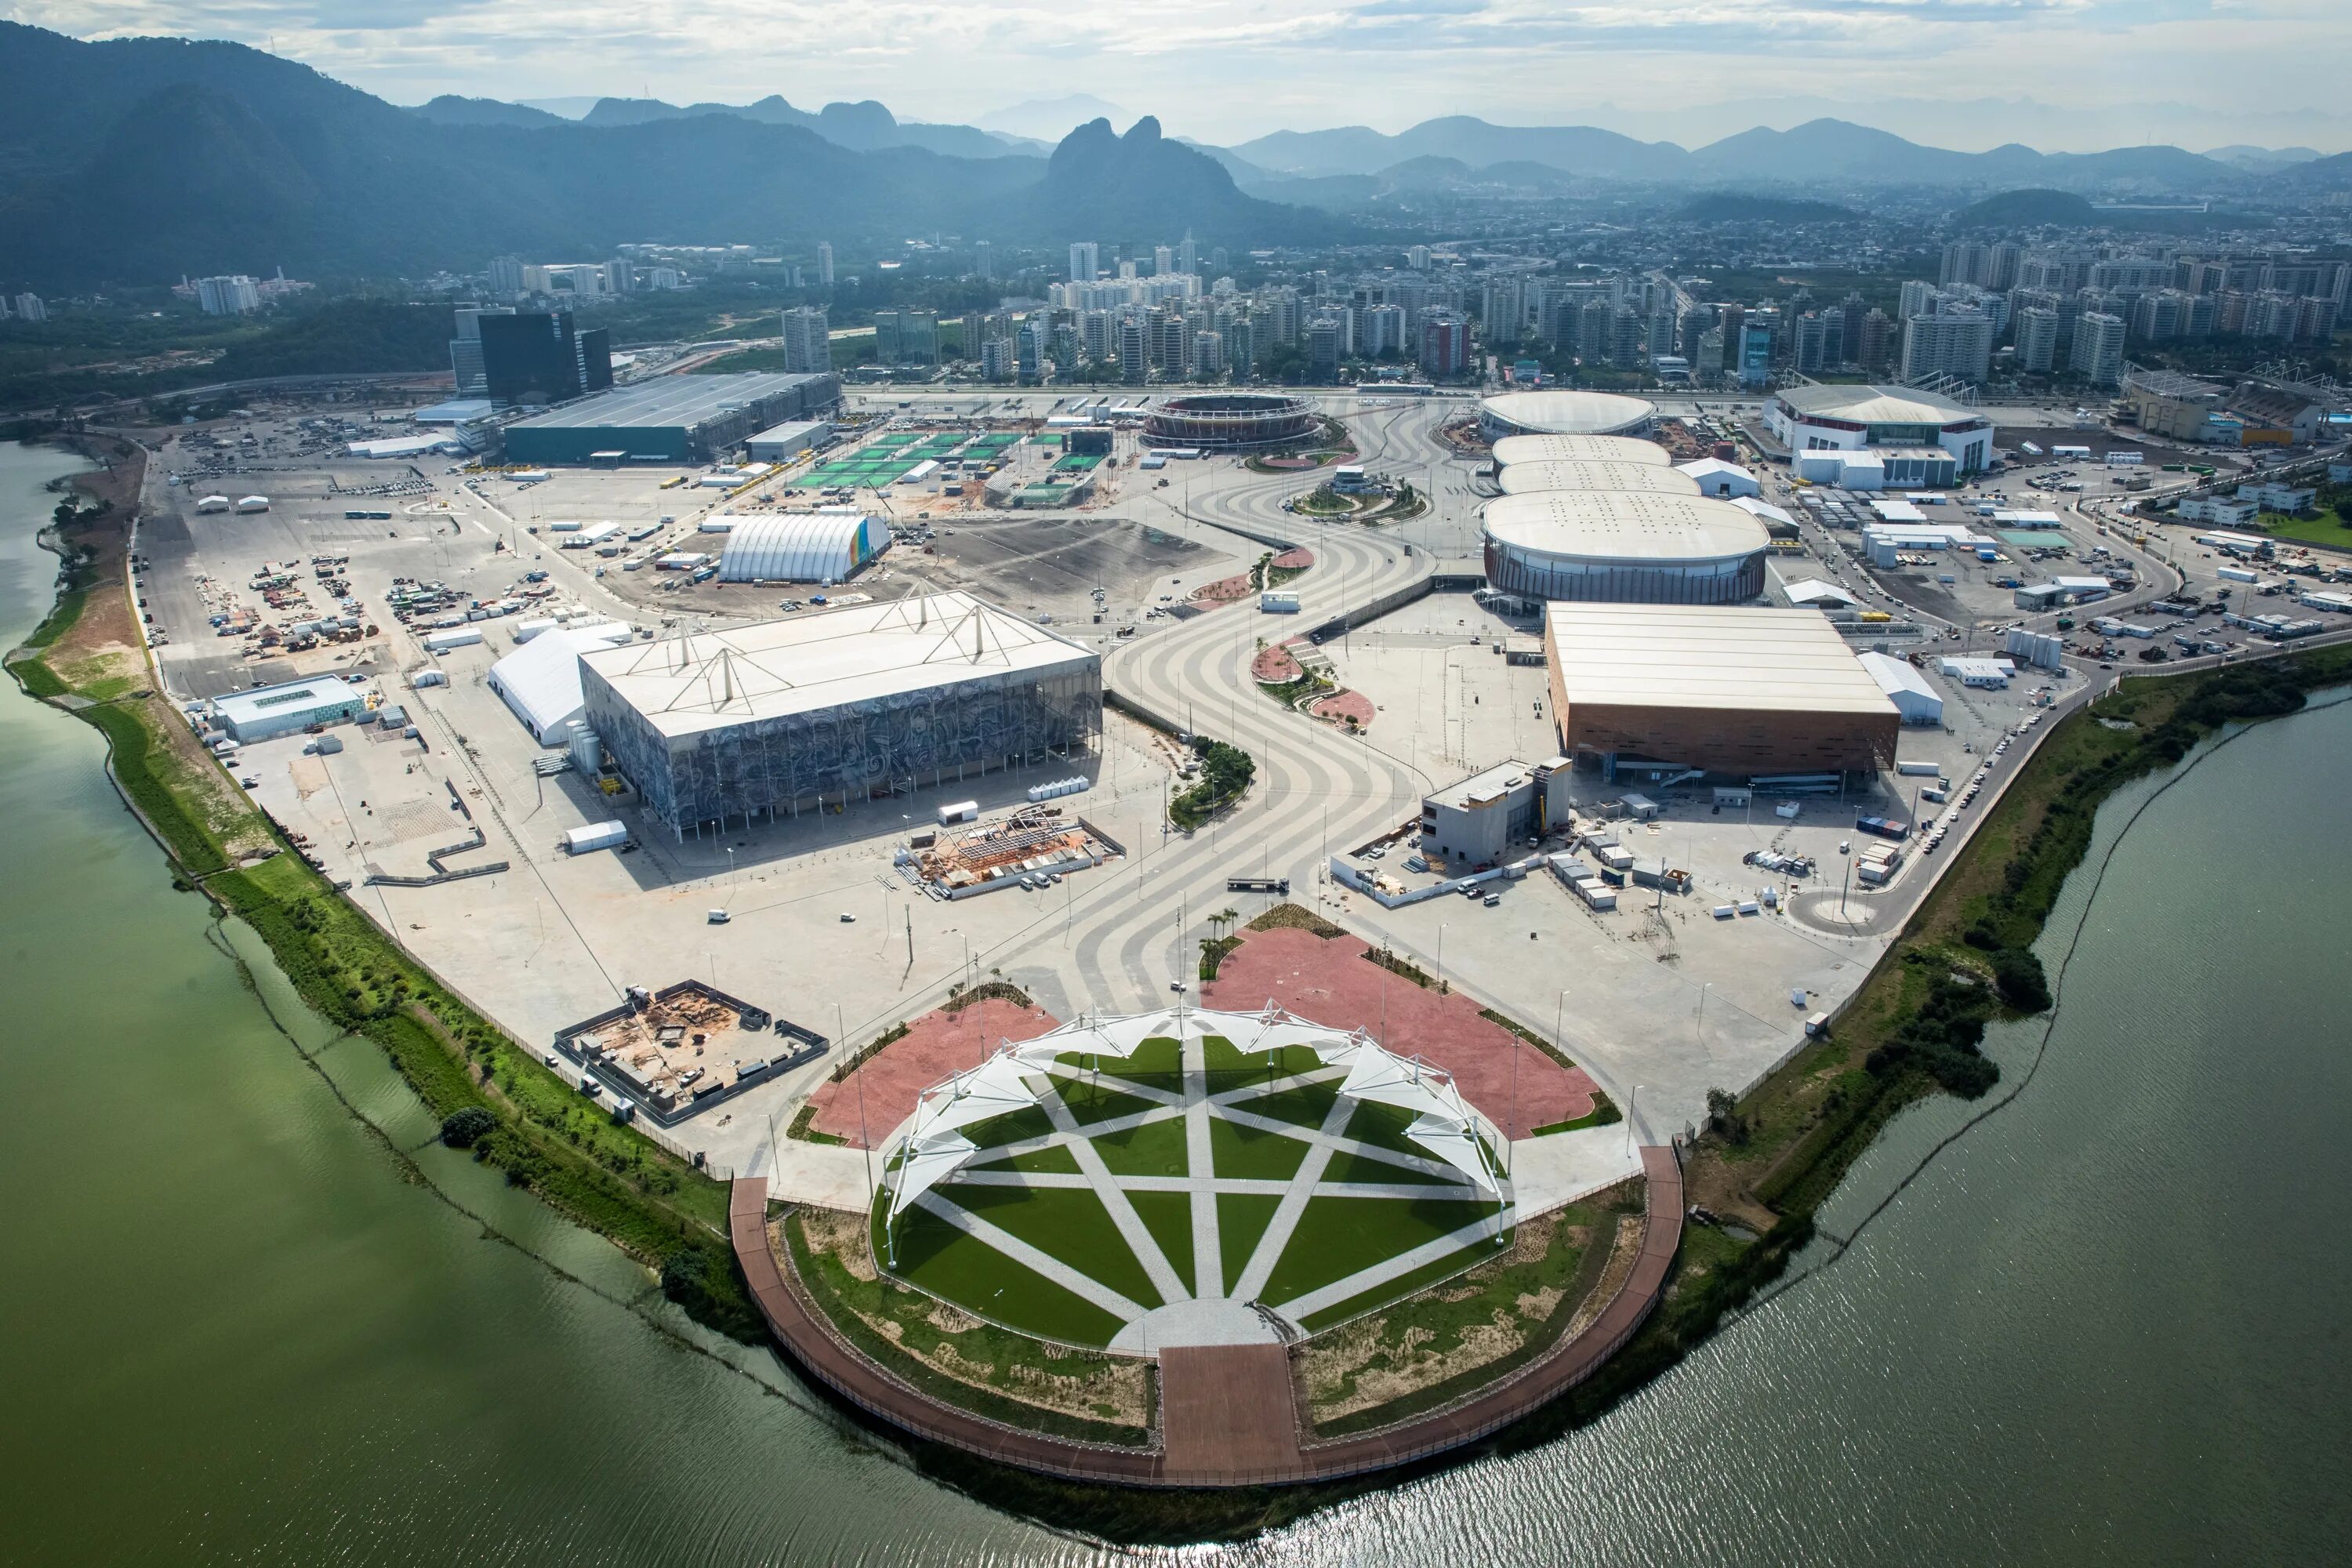 Села рио. Олимпийская деревня Рио-де-Жанейро. Олимпийский парк в Рио де Жанейро. Олимпийская деревня Рио 2016. Олимпийский парк Рио де Жанейро 2017.